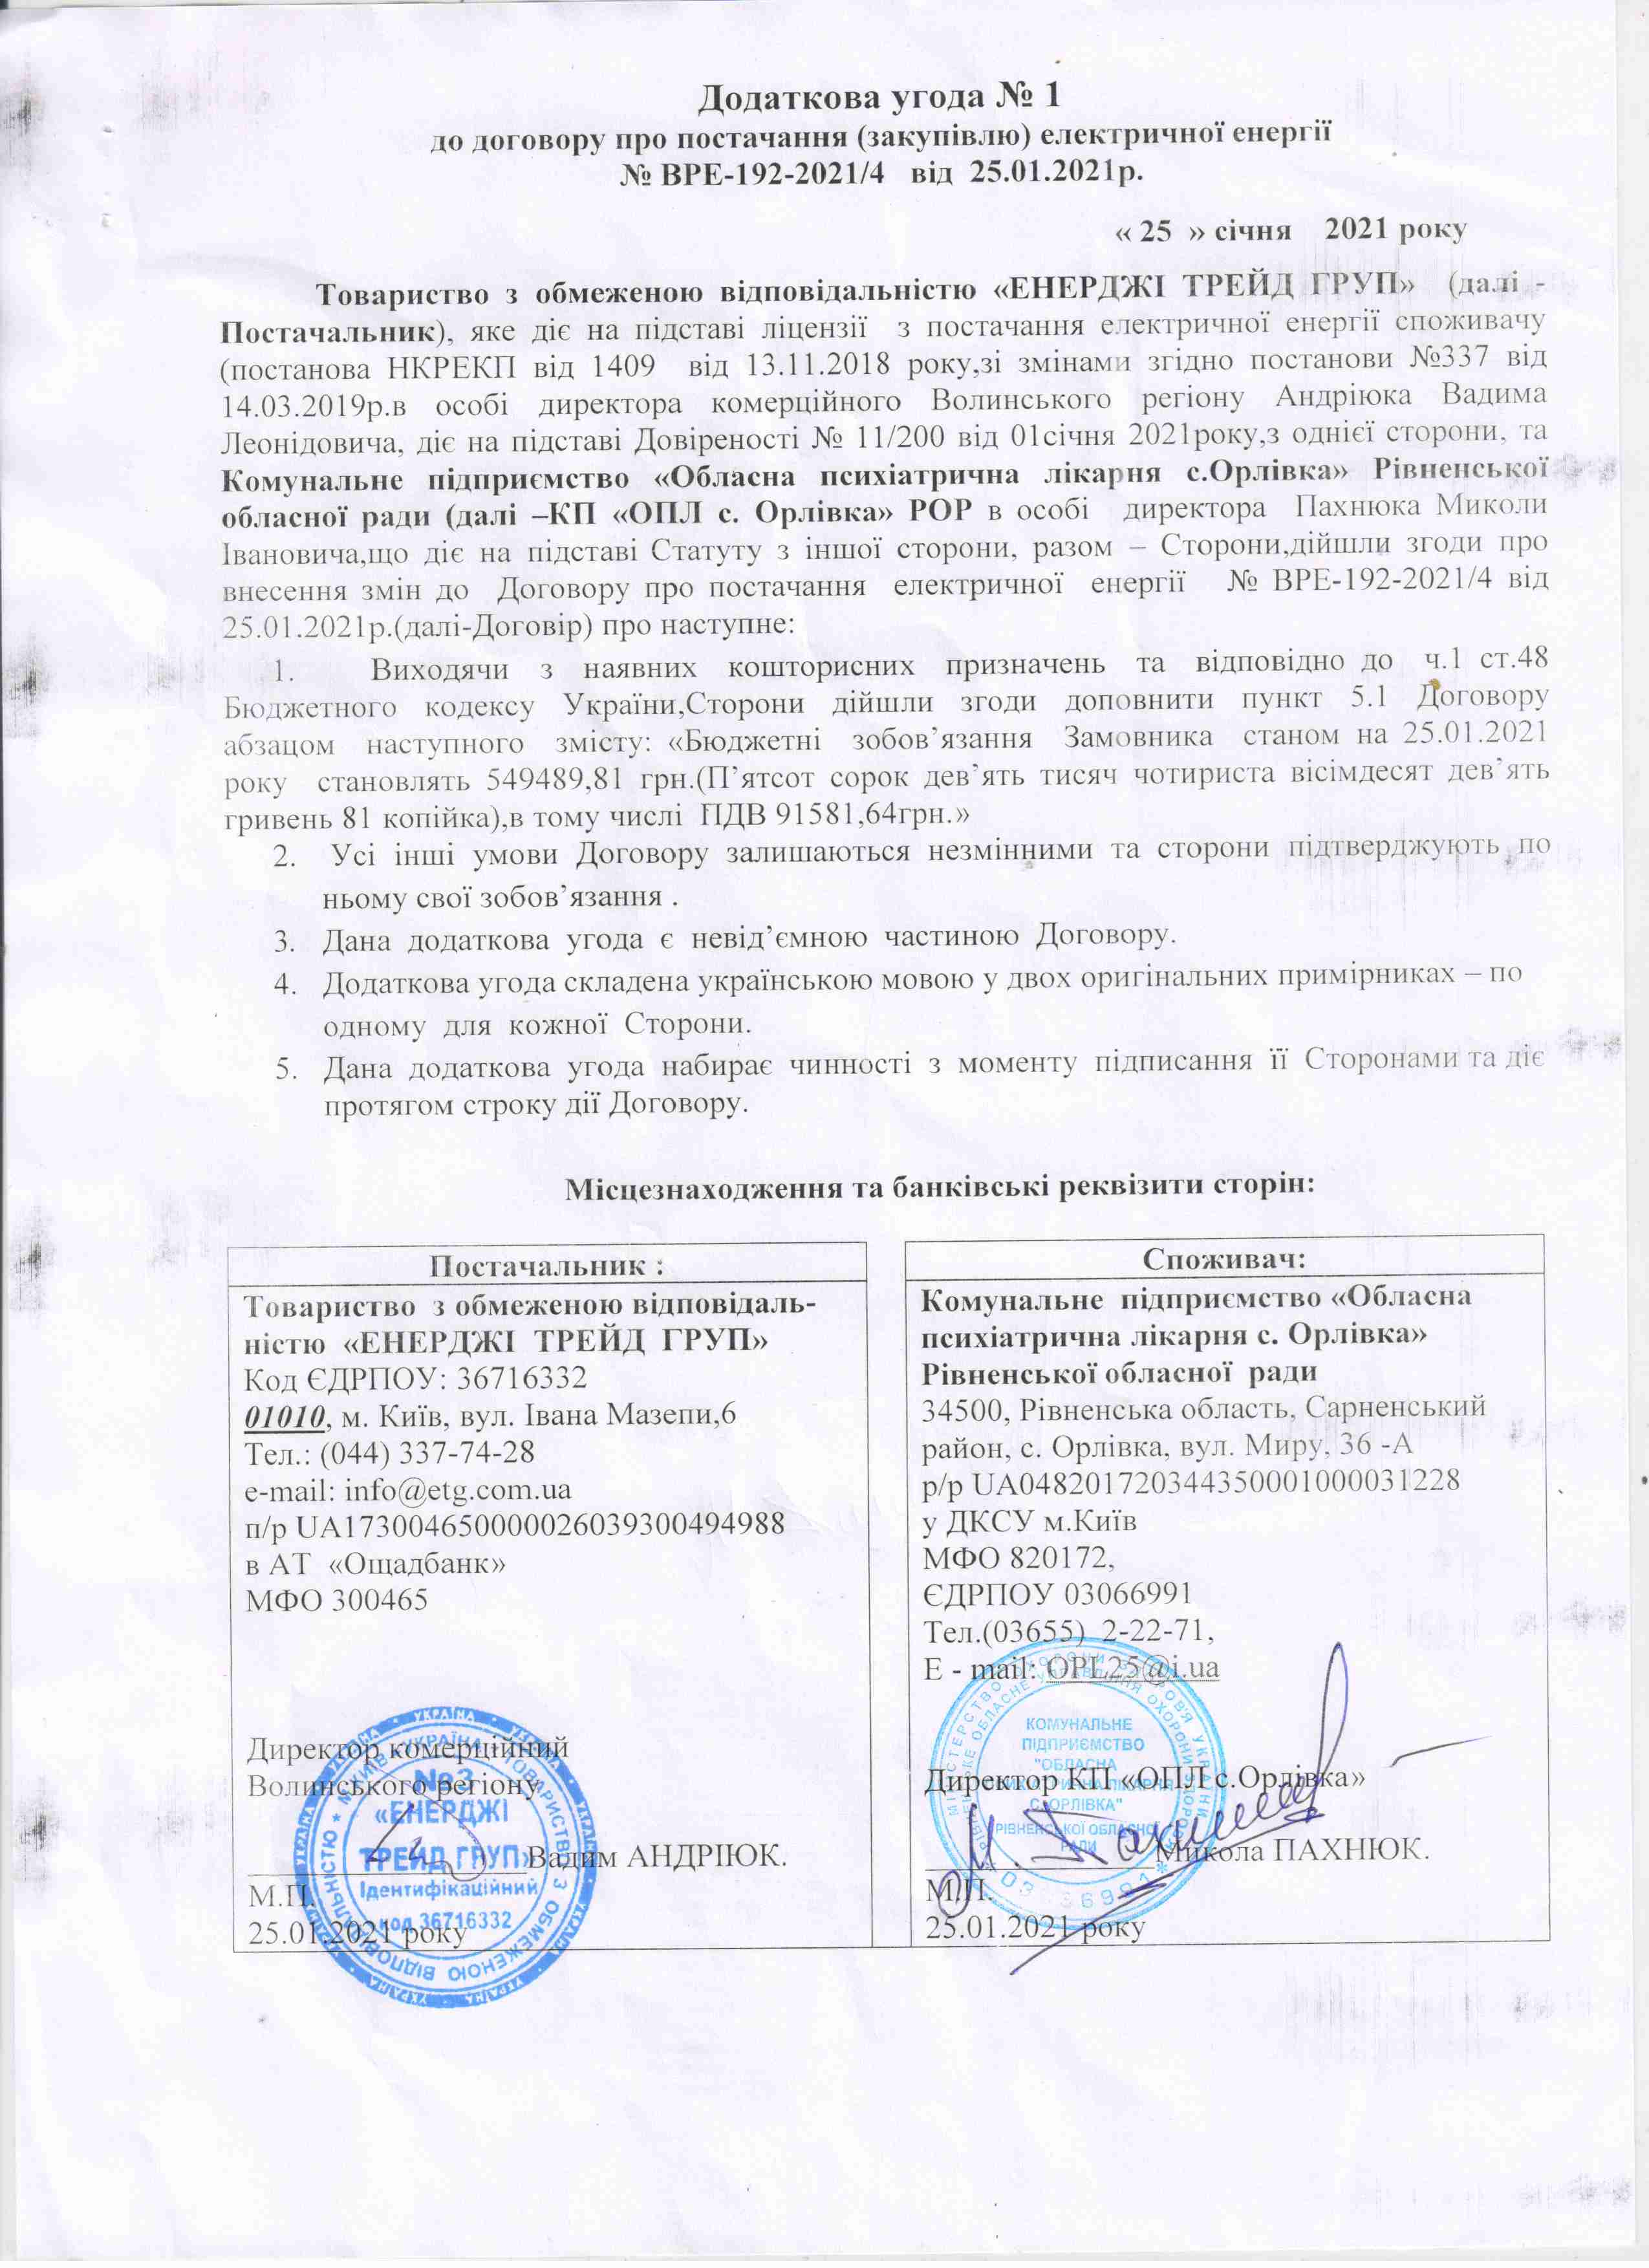 Додаткова угода до договору №ВРЕ-192-2021/4 від 25.01.2021 р.